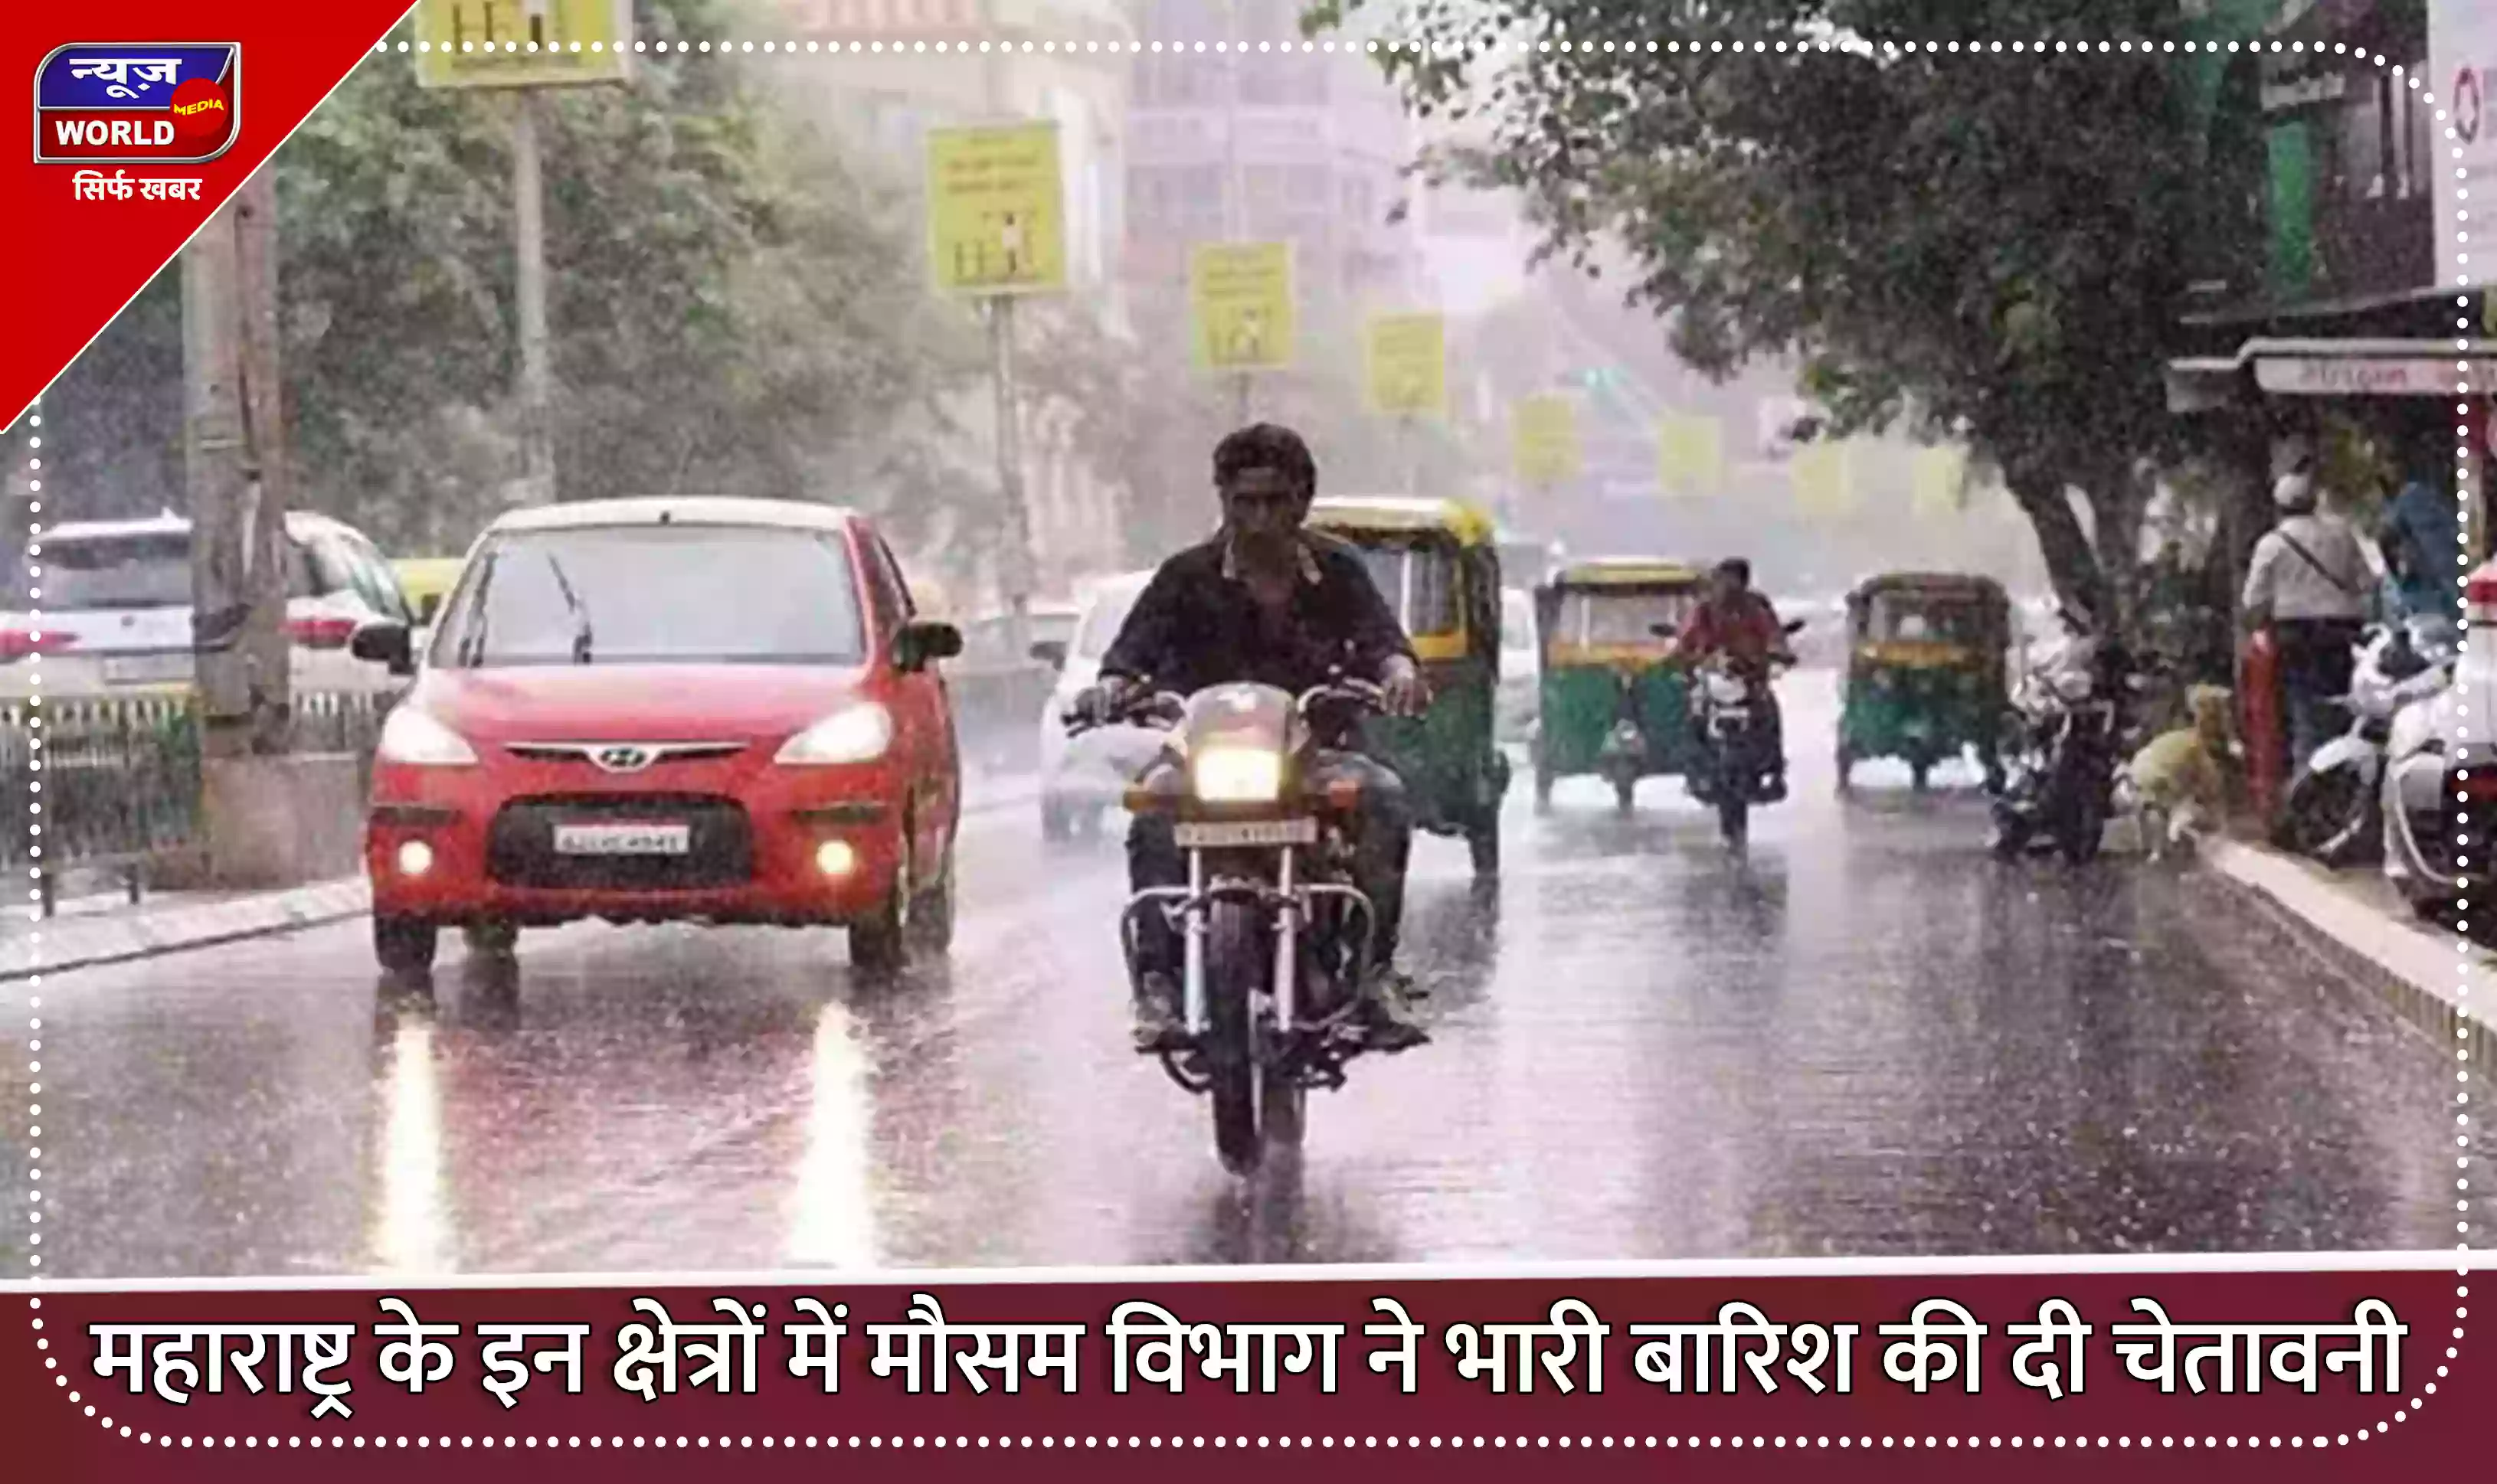 महाराष्ट्र के इन क्षेत्रों में मौसम विभाग ने भारी बारिश की दी चेतावनी, जारी किया ऑरेंज अलर्ट